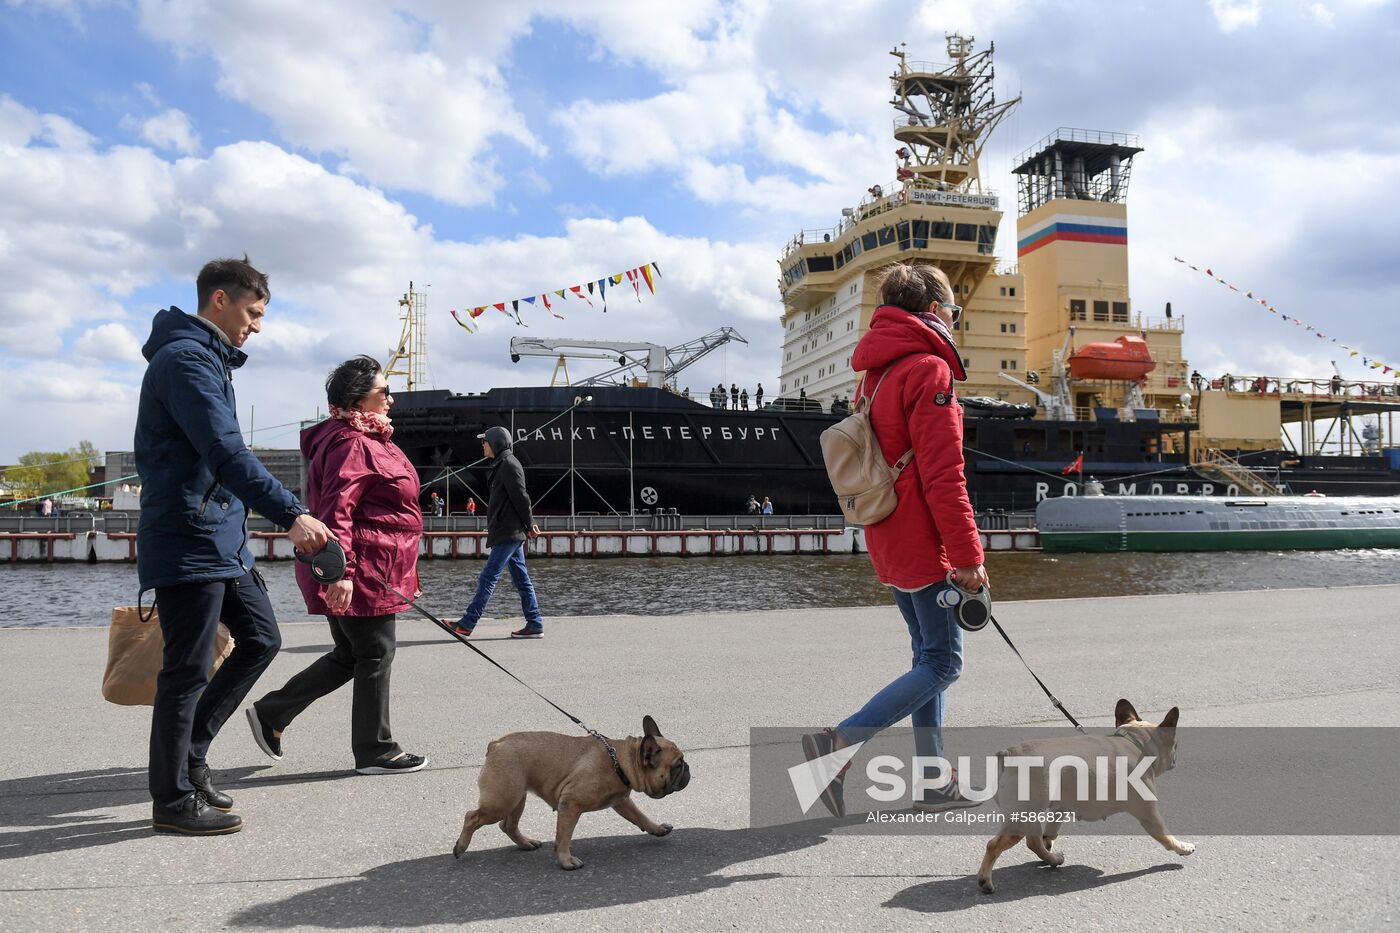 Russia Ships Festival